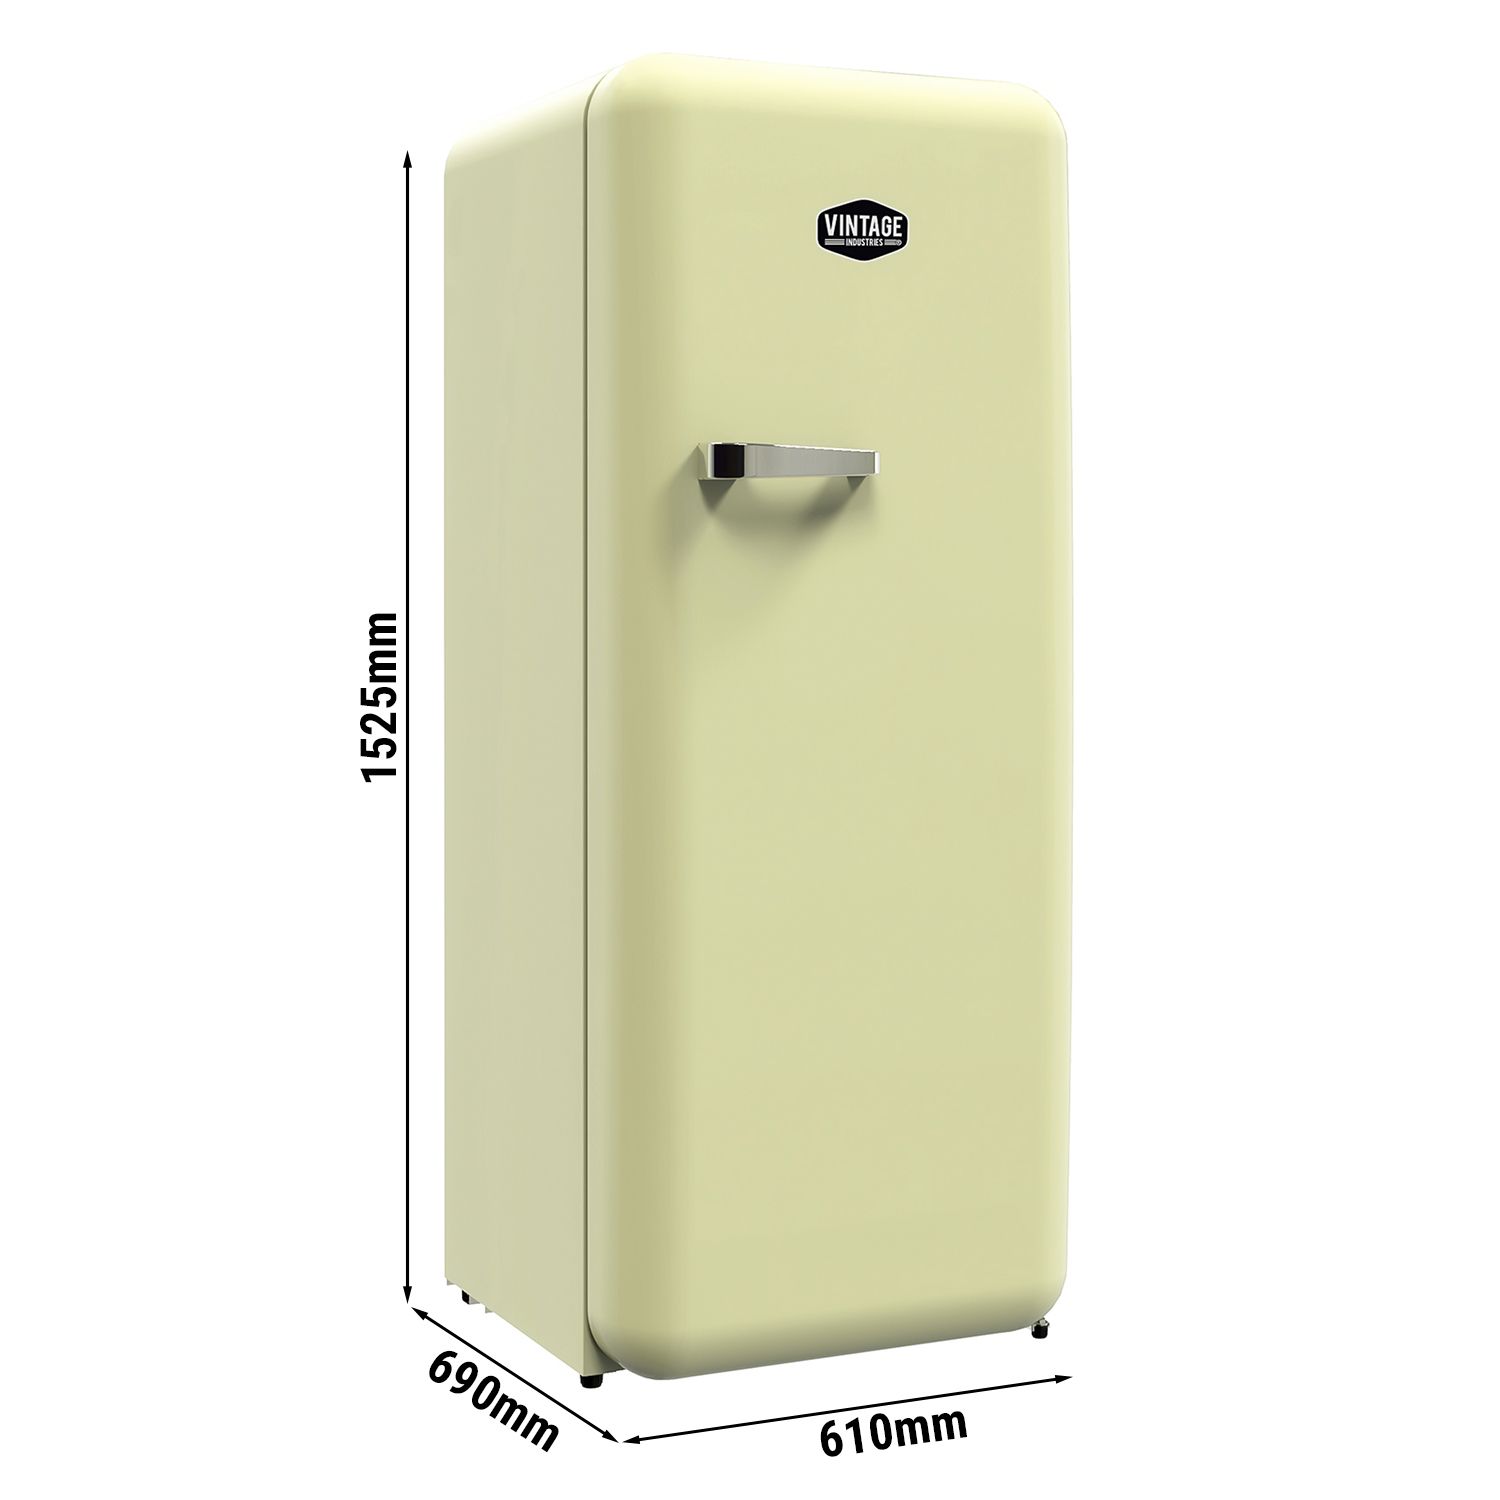 Réfrigérateur rétro - 228 litres - 1 porte - Rouge